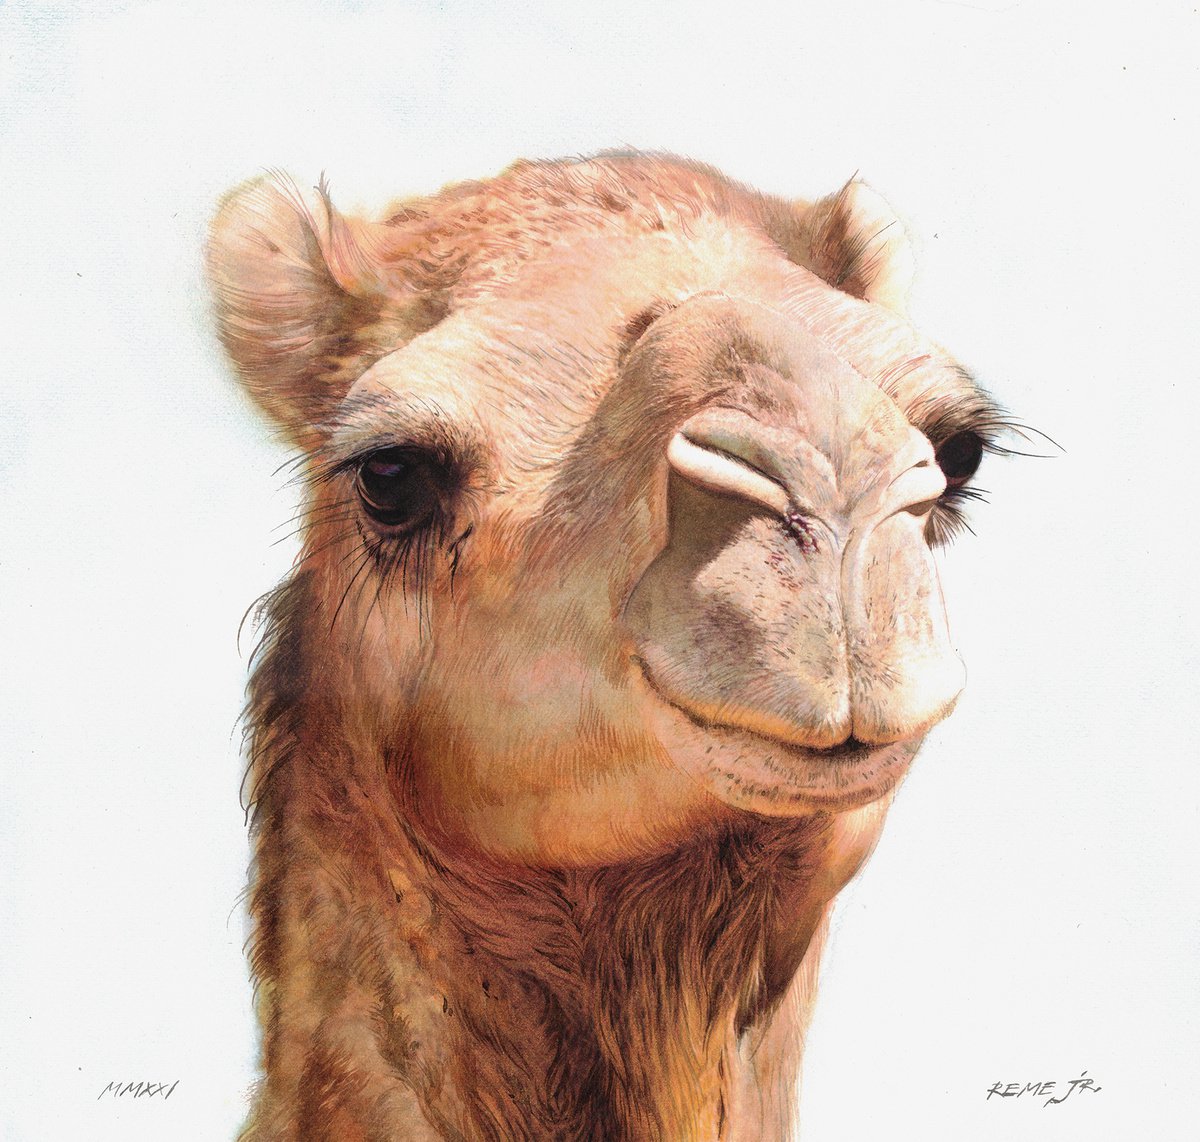 Camel IV by REME Jr.